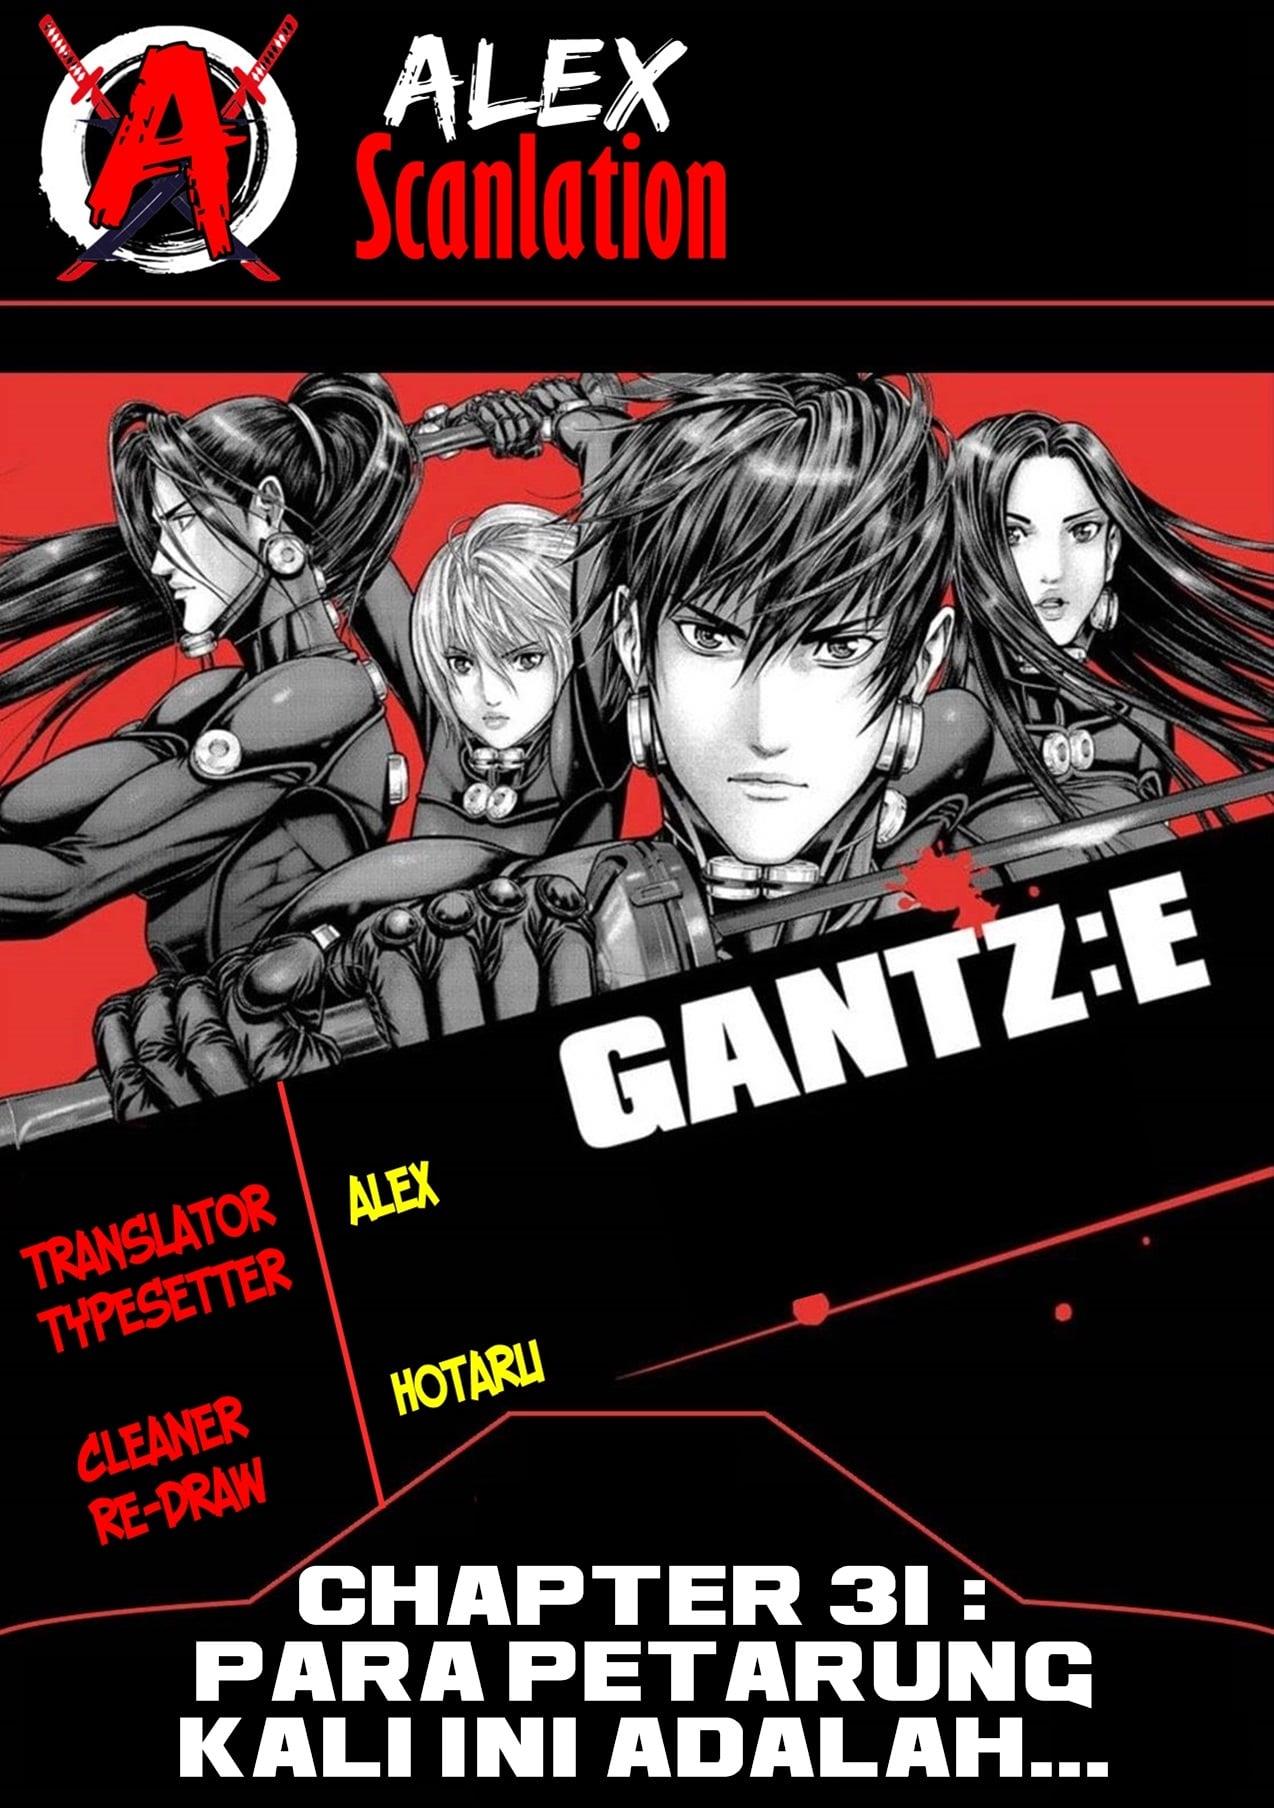 Gantz:E Chapter 31